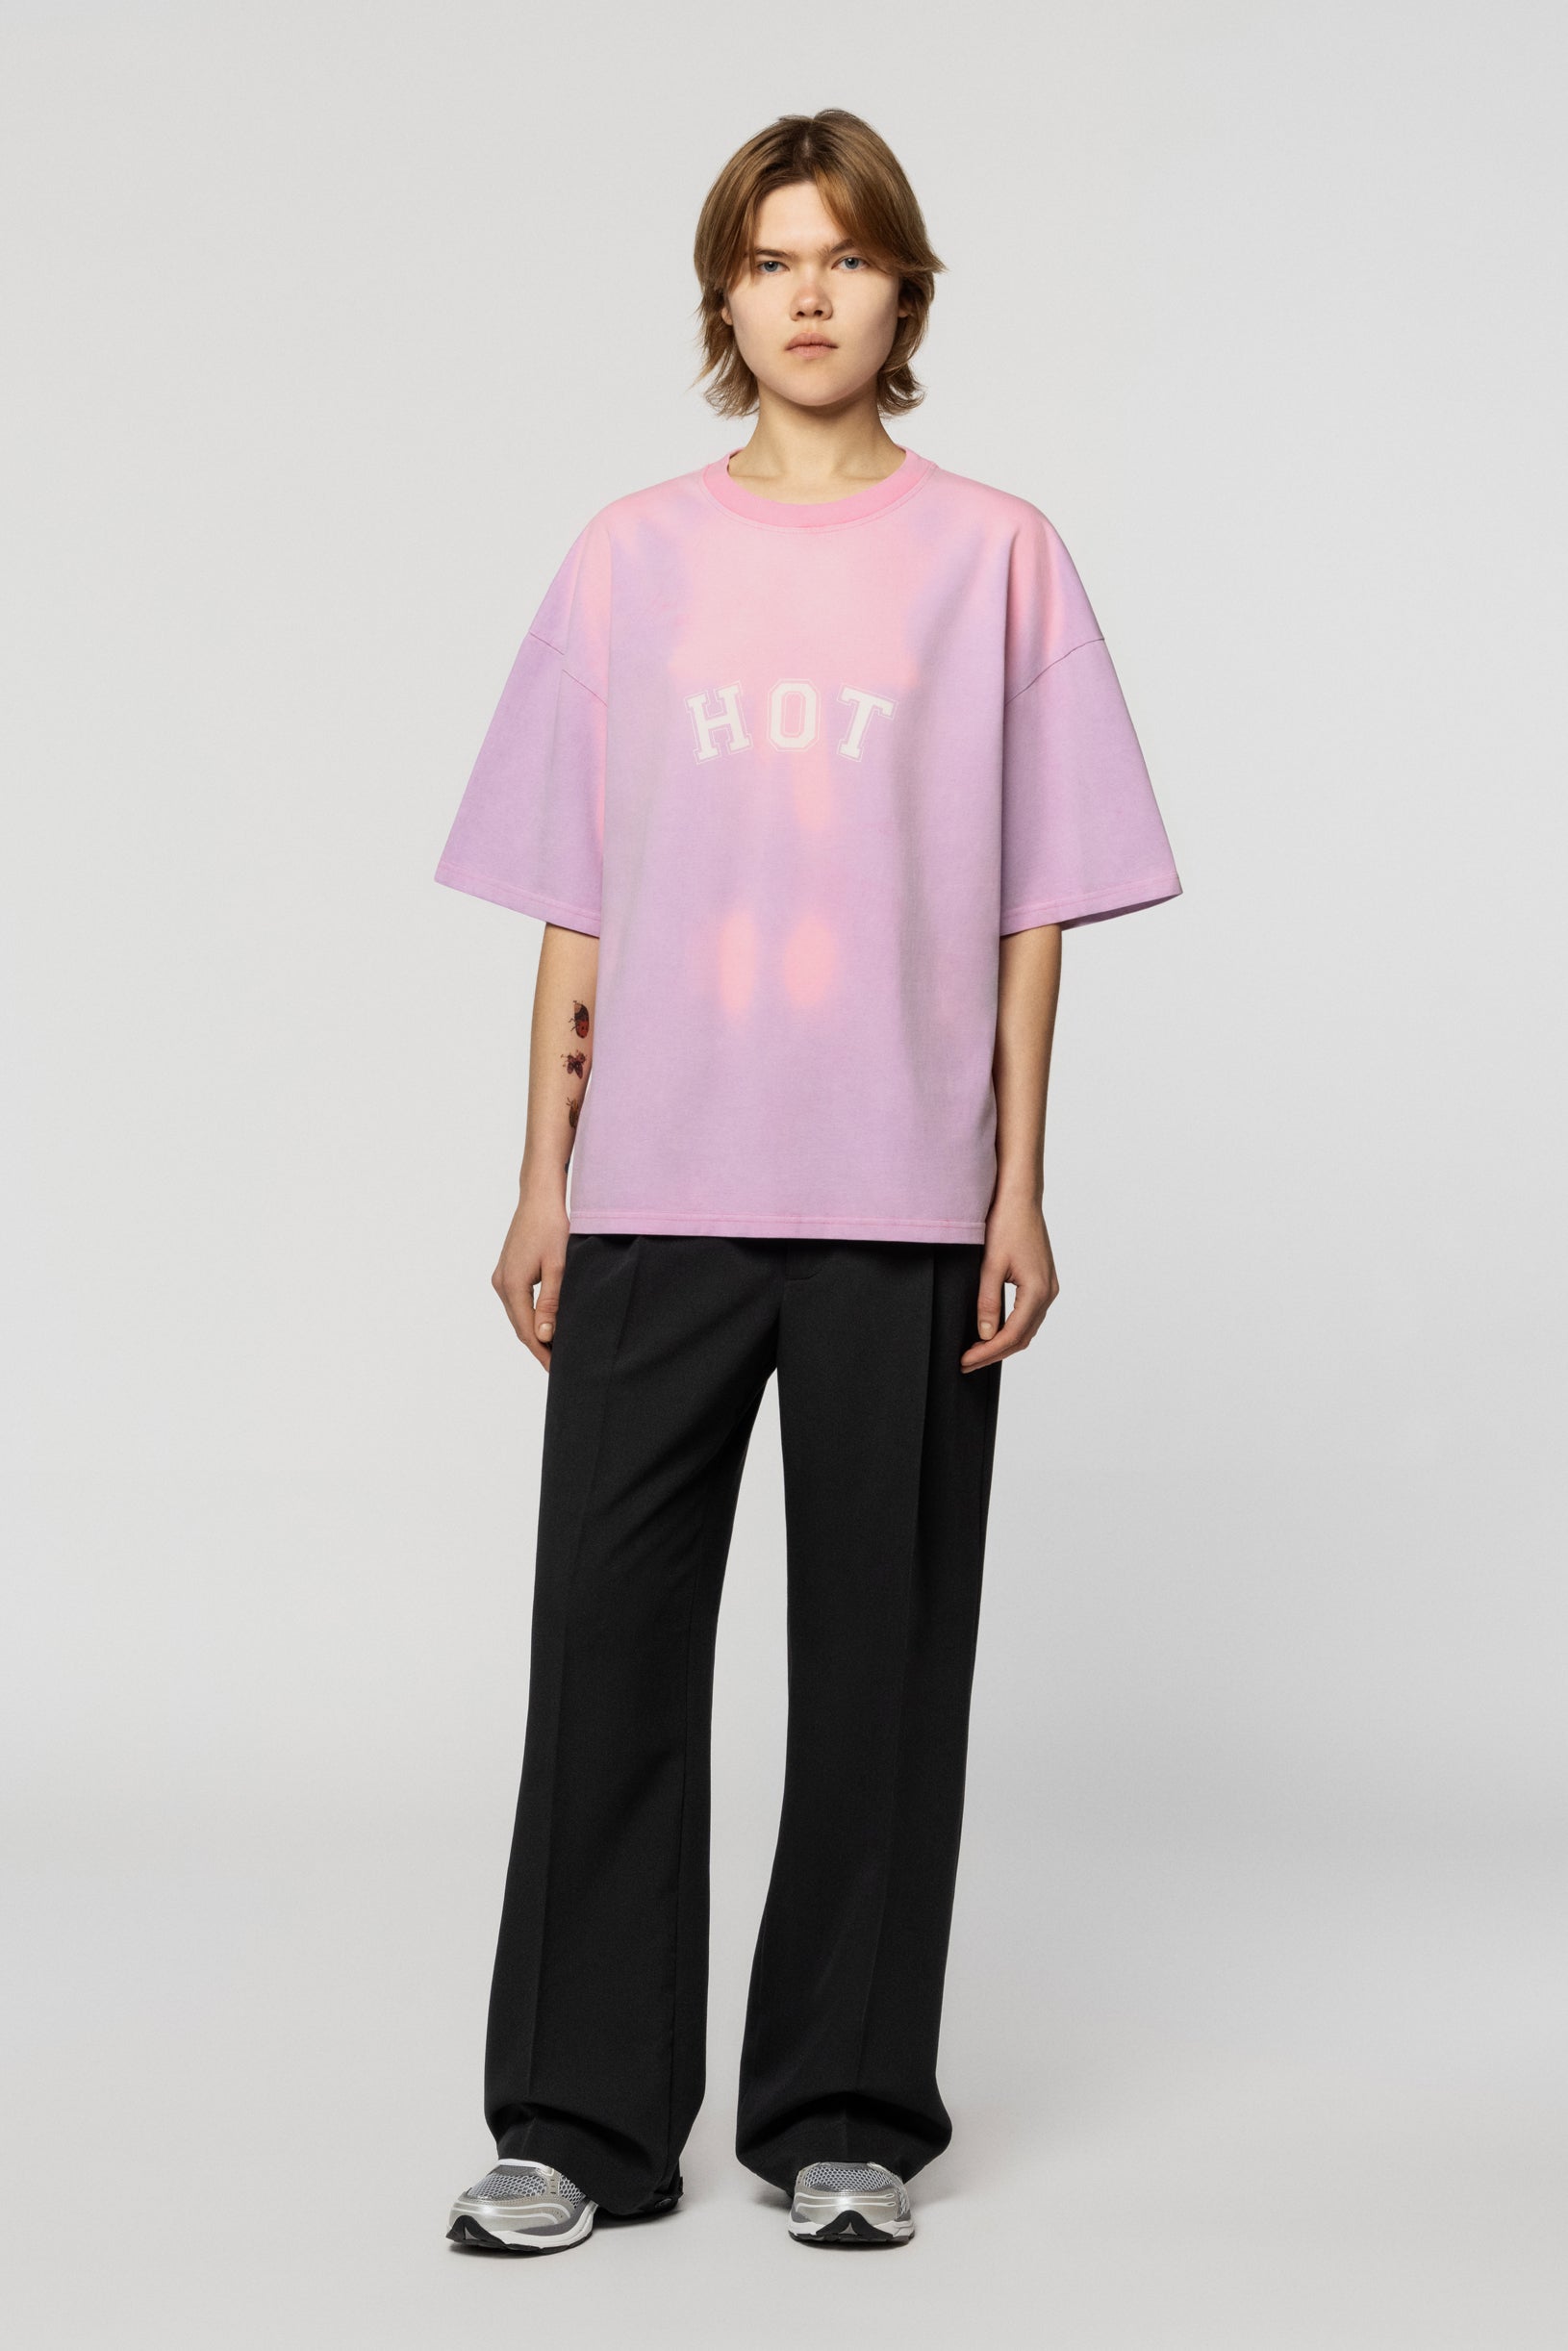 Hot Heat Reactive Oversized T-shirt Pink